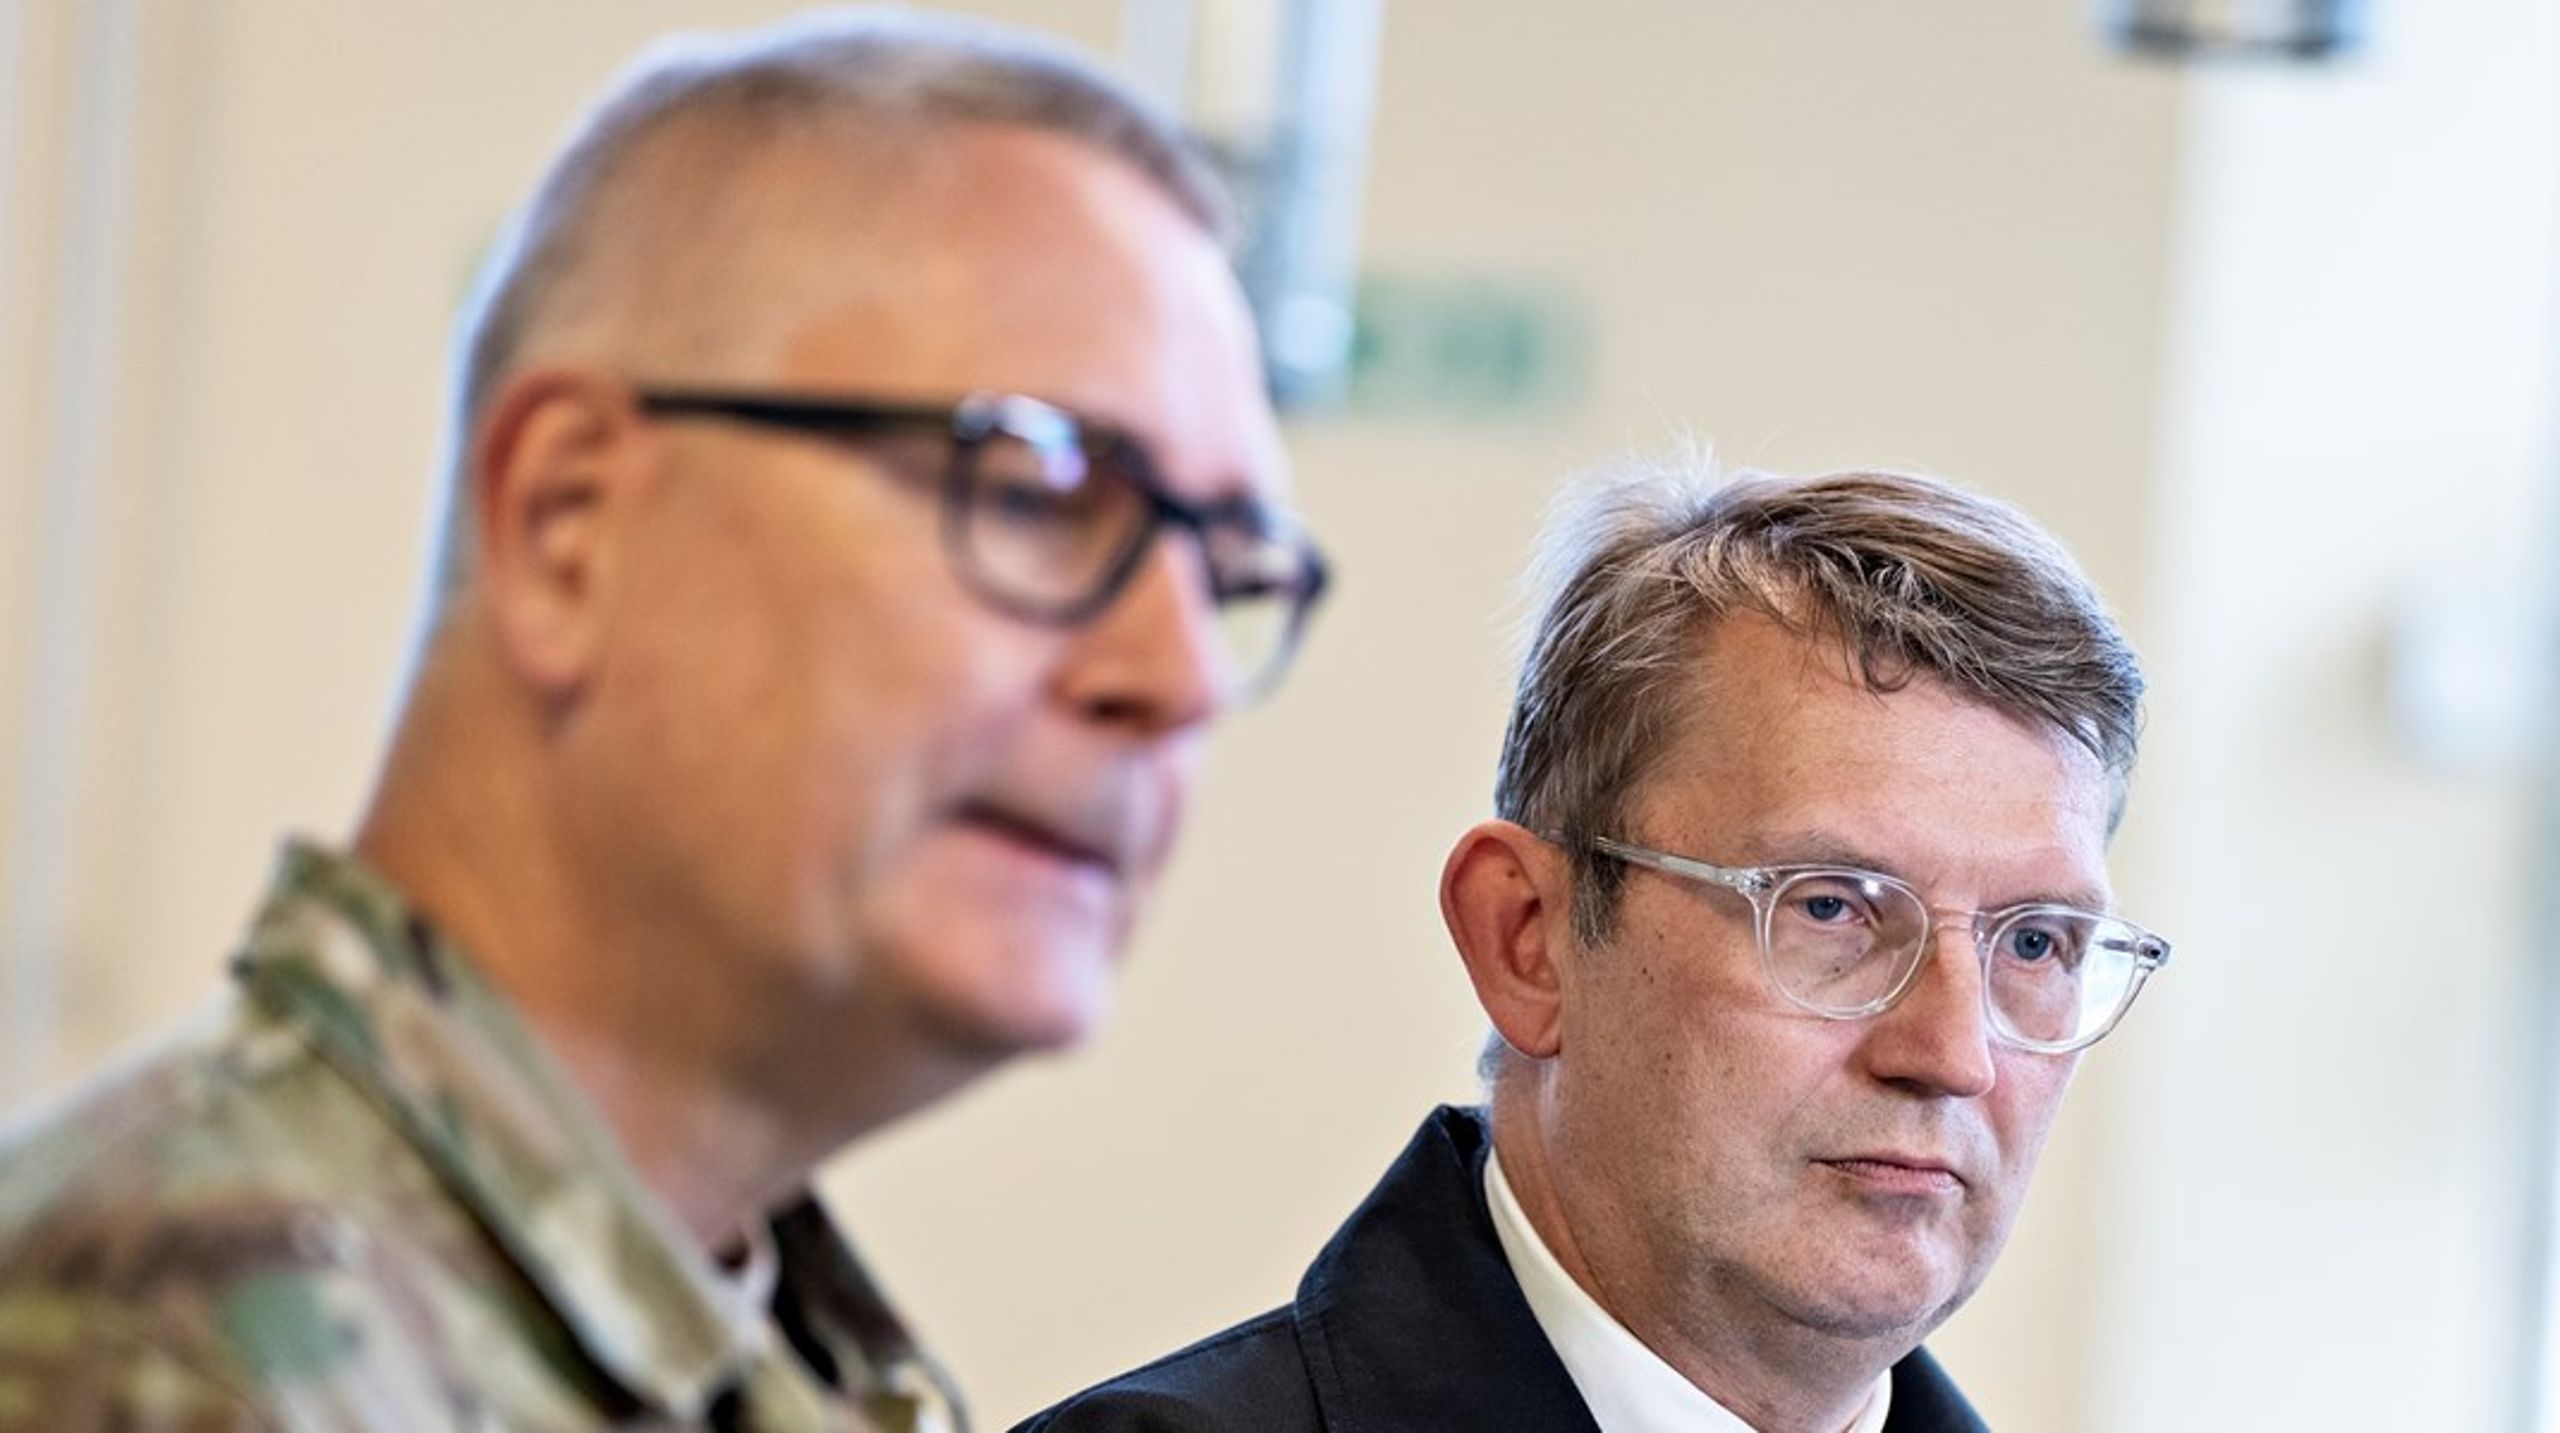 Den lækkede plan om udarbejdelsen af 28 analyser viser hvor lidt, det politiske niveau egentligt ønsker at påtage sig ansvar for Danmarks foranstående militære oprustning, skriver&nbsp;Martin Mosvad.